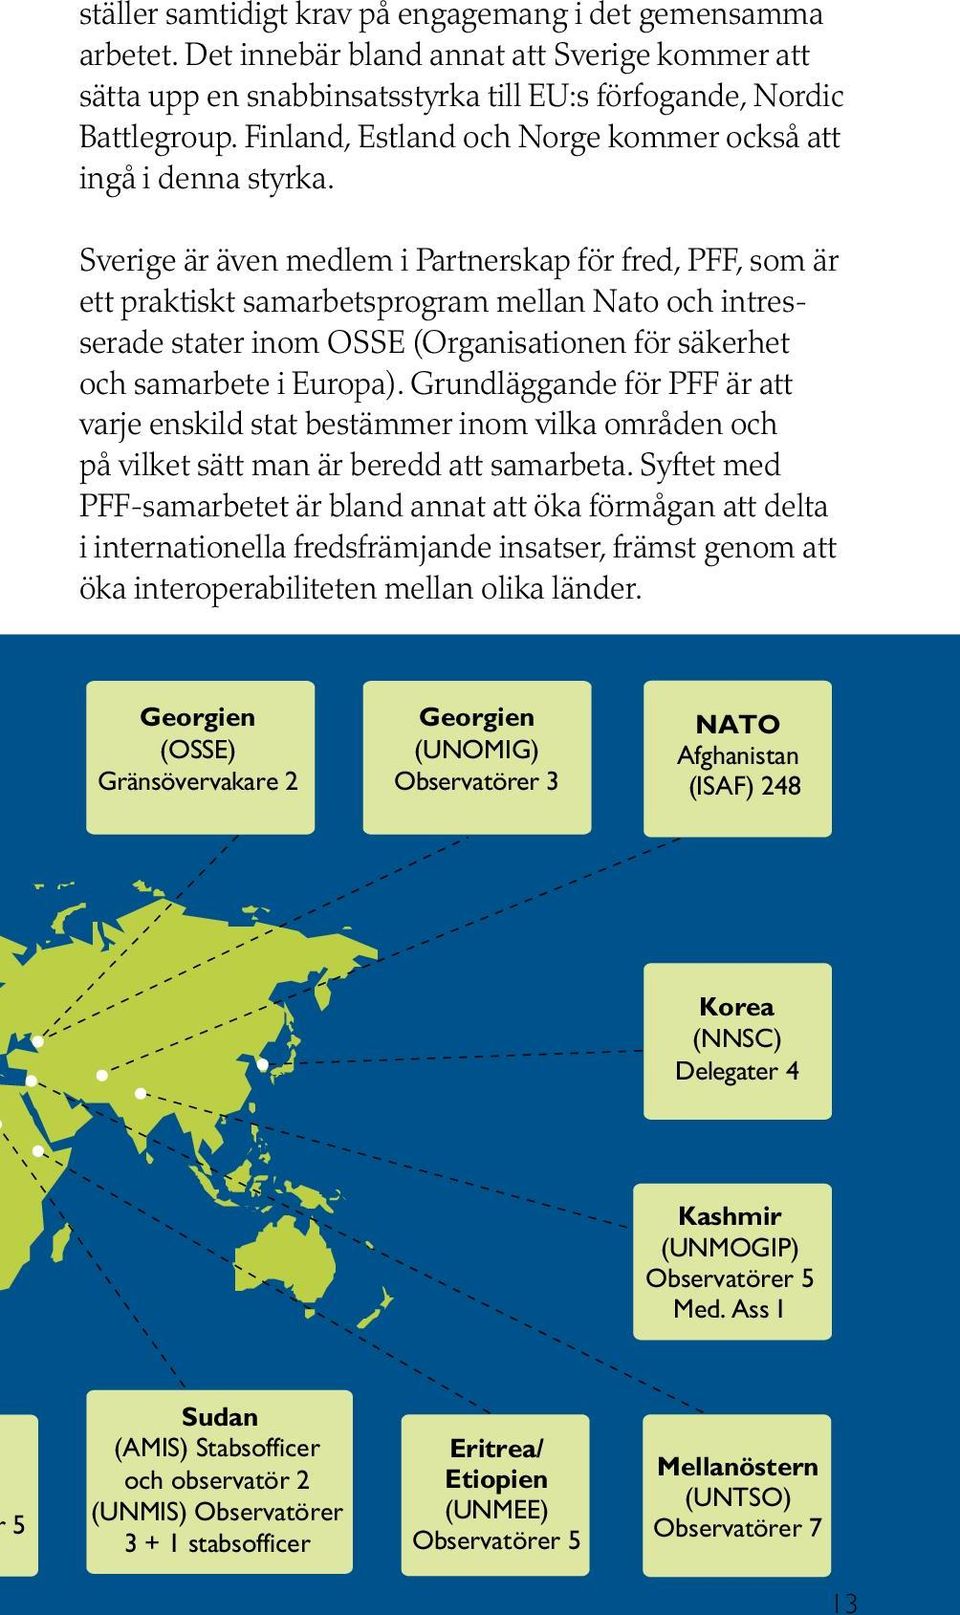 Sverige är även medlem i Partnerskap för fred, PFF, som är ett praktiskt samarbetsprogram mellan Nato och intresserade stater inom OSSE (Organisationen för säkerhet och samarbete i Europa).